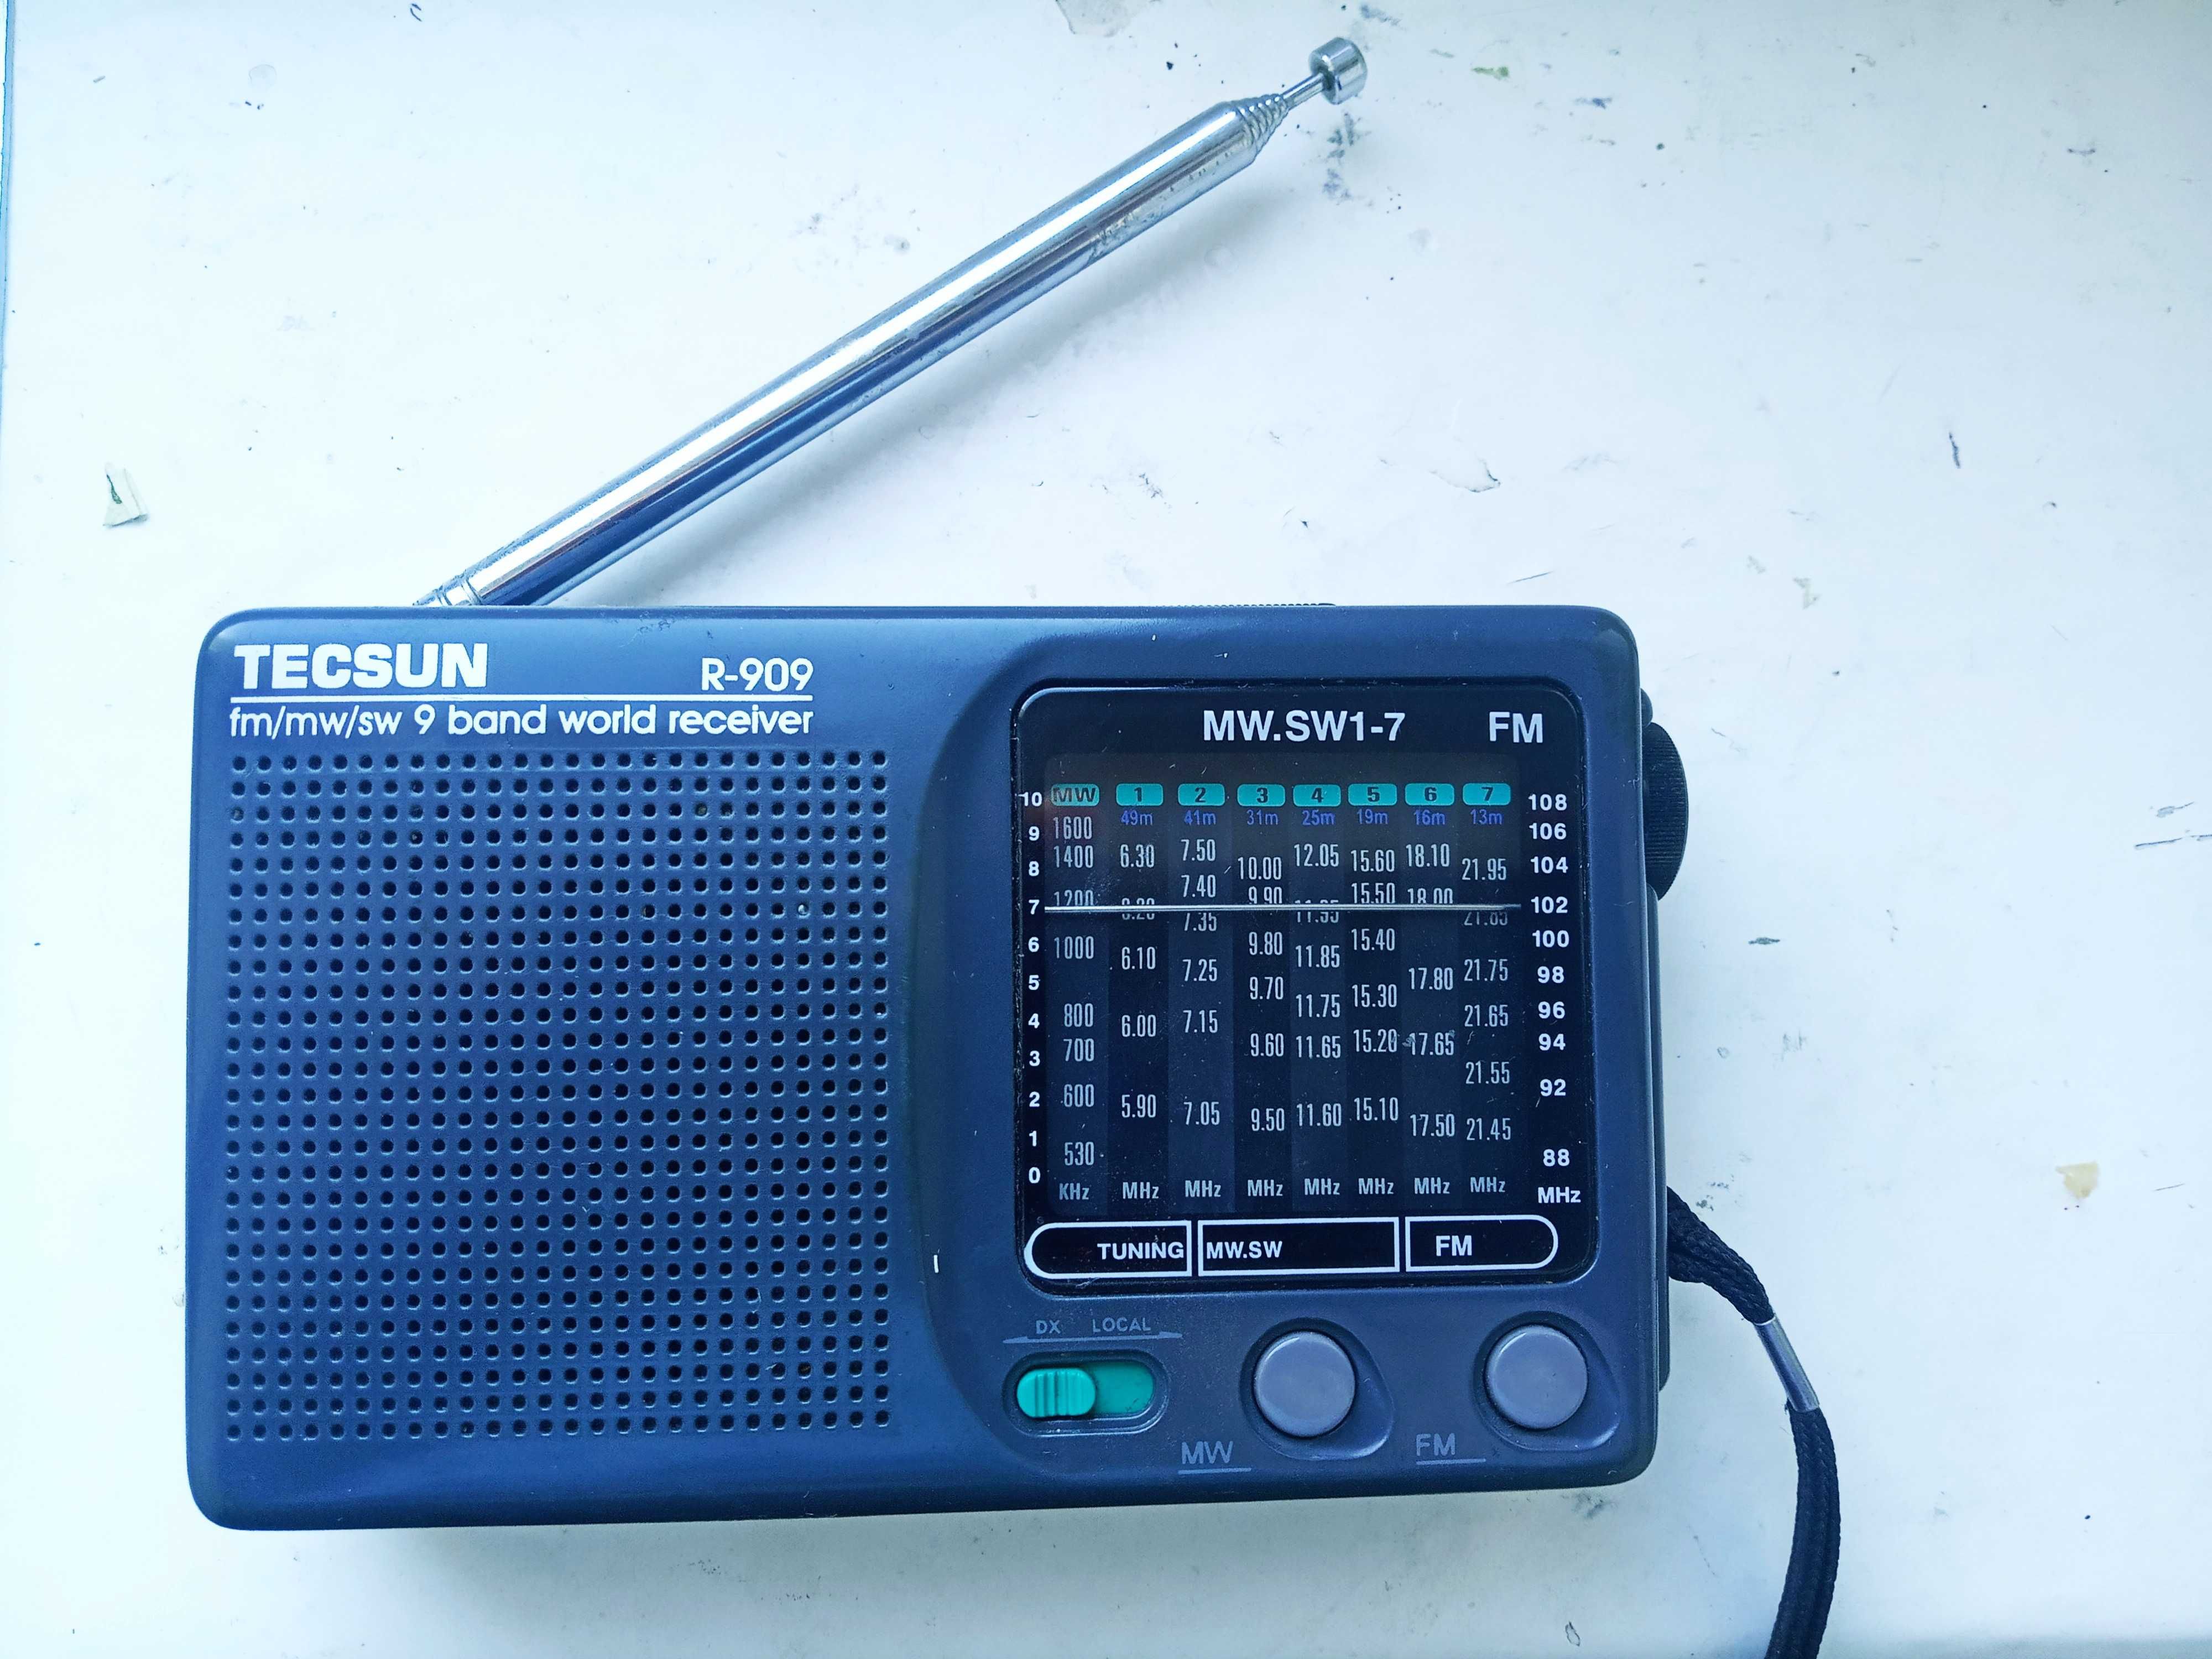 радиоприемник Тесsun R-909, с упаковкой